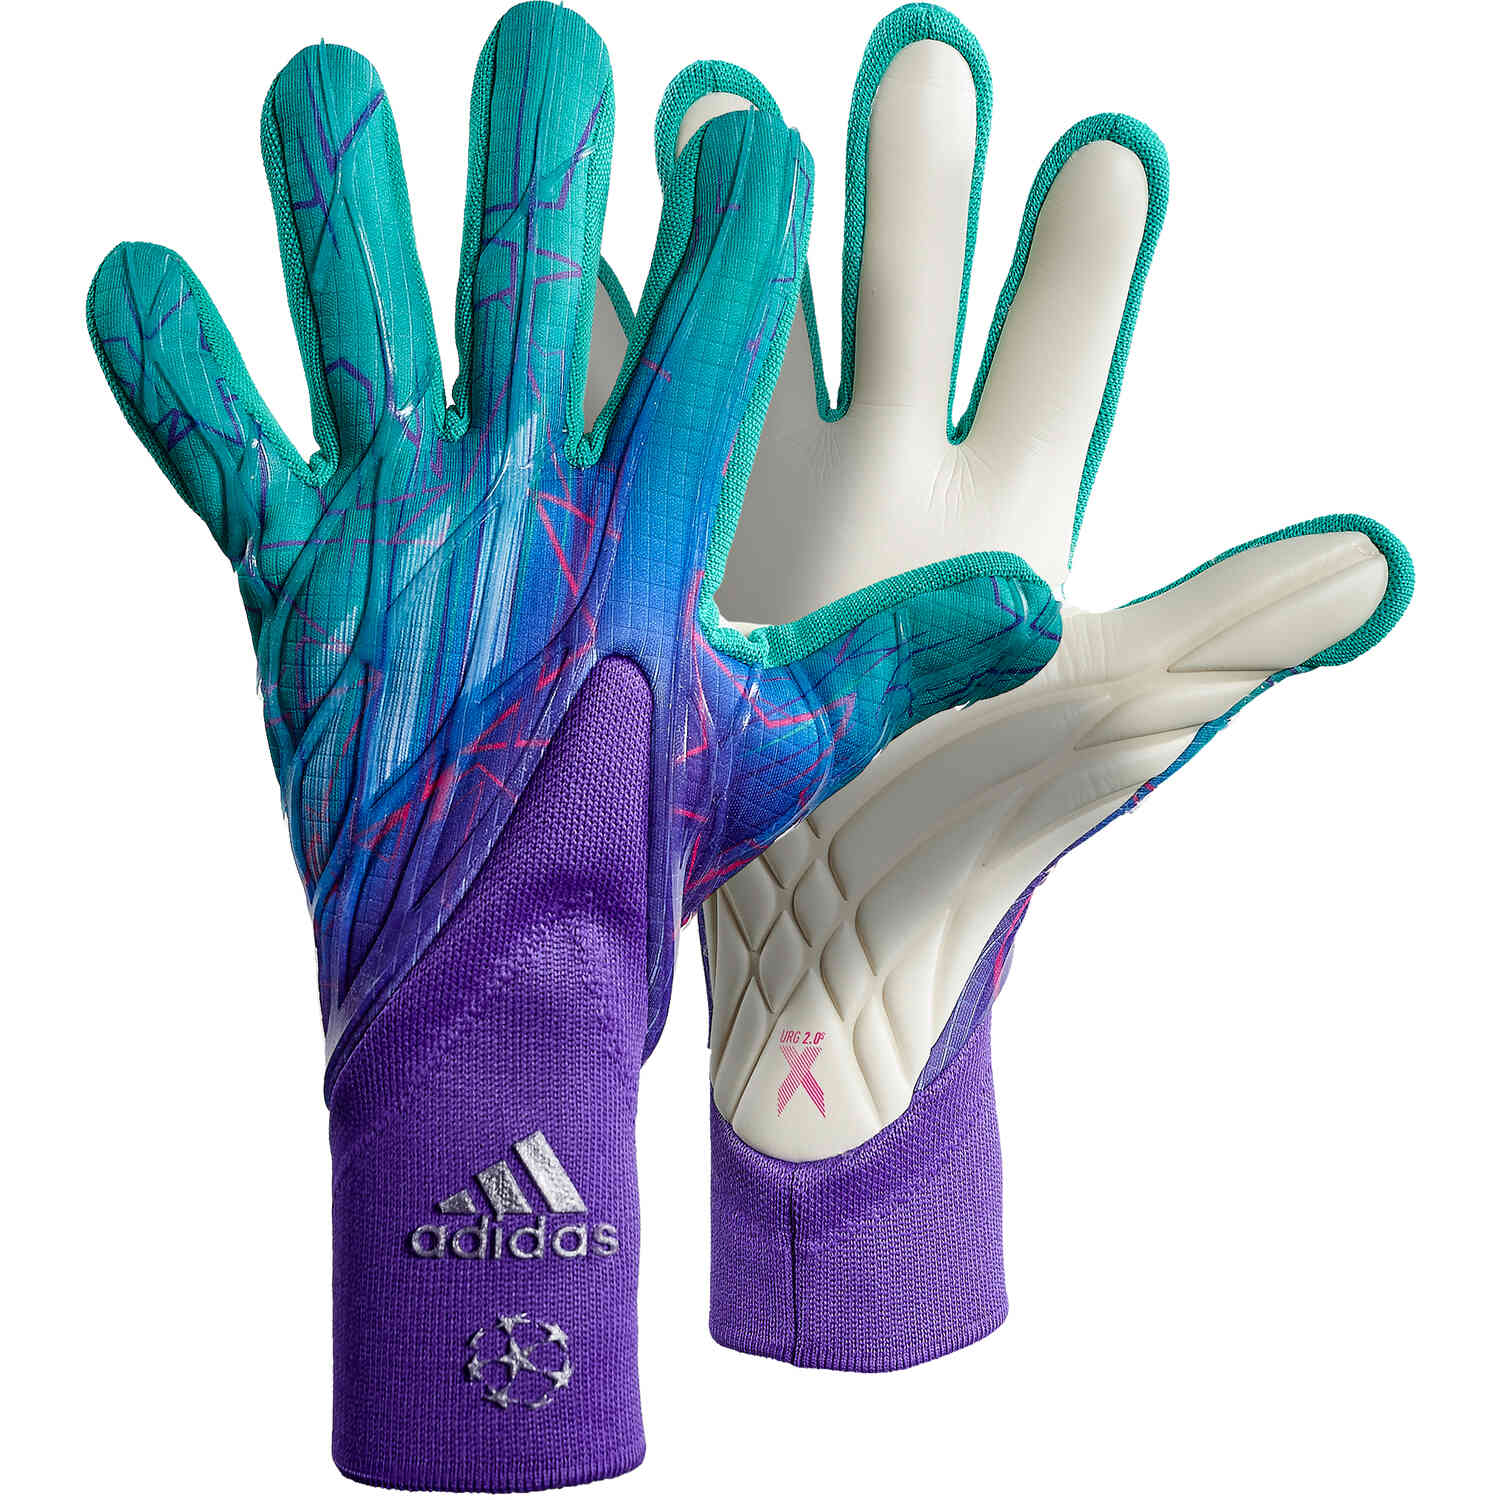 flor activación exhaustivo adidas X Pro Goalkeeper Gloves - Champions Code - Soccer Master